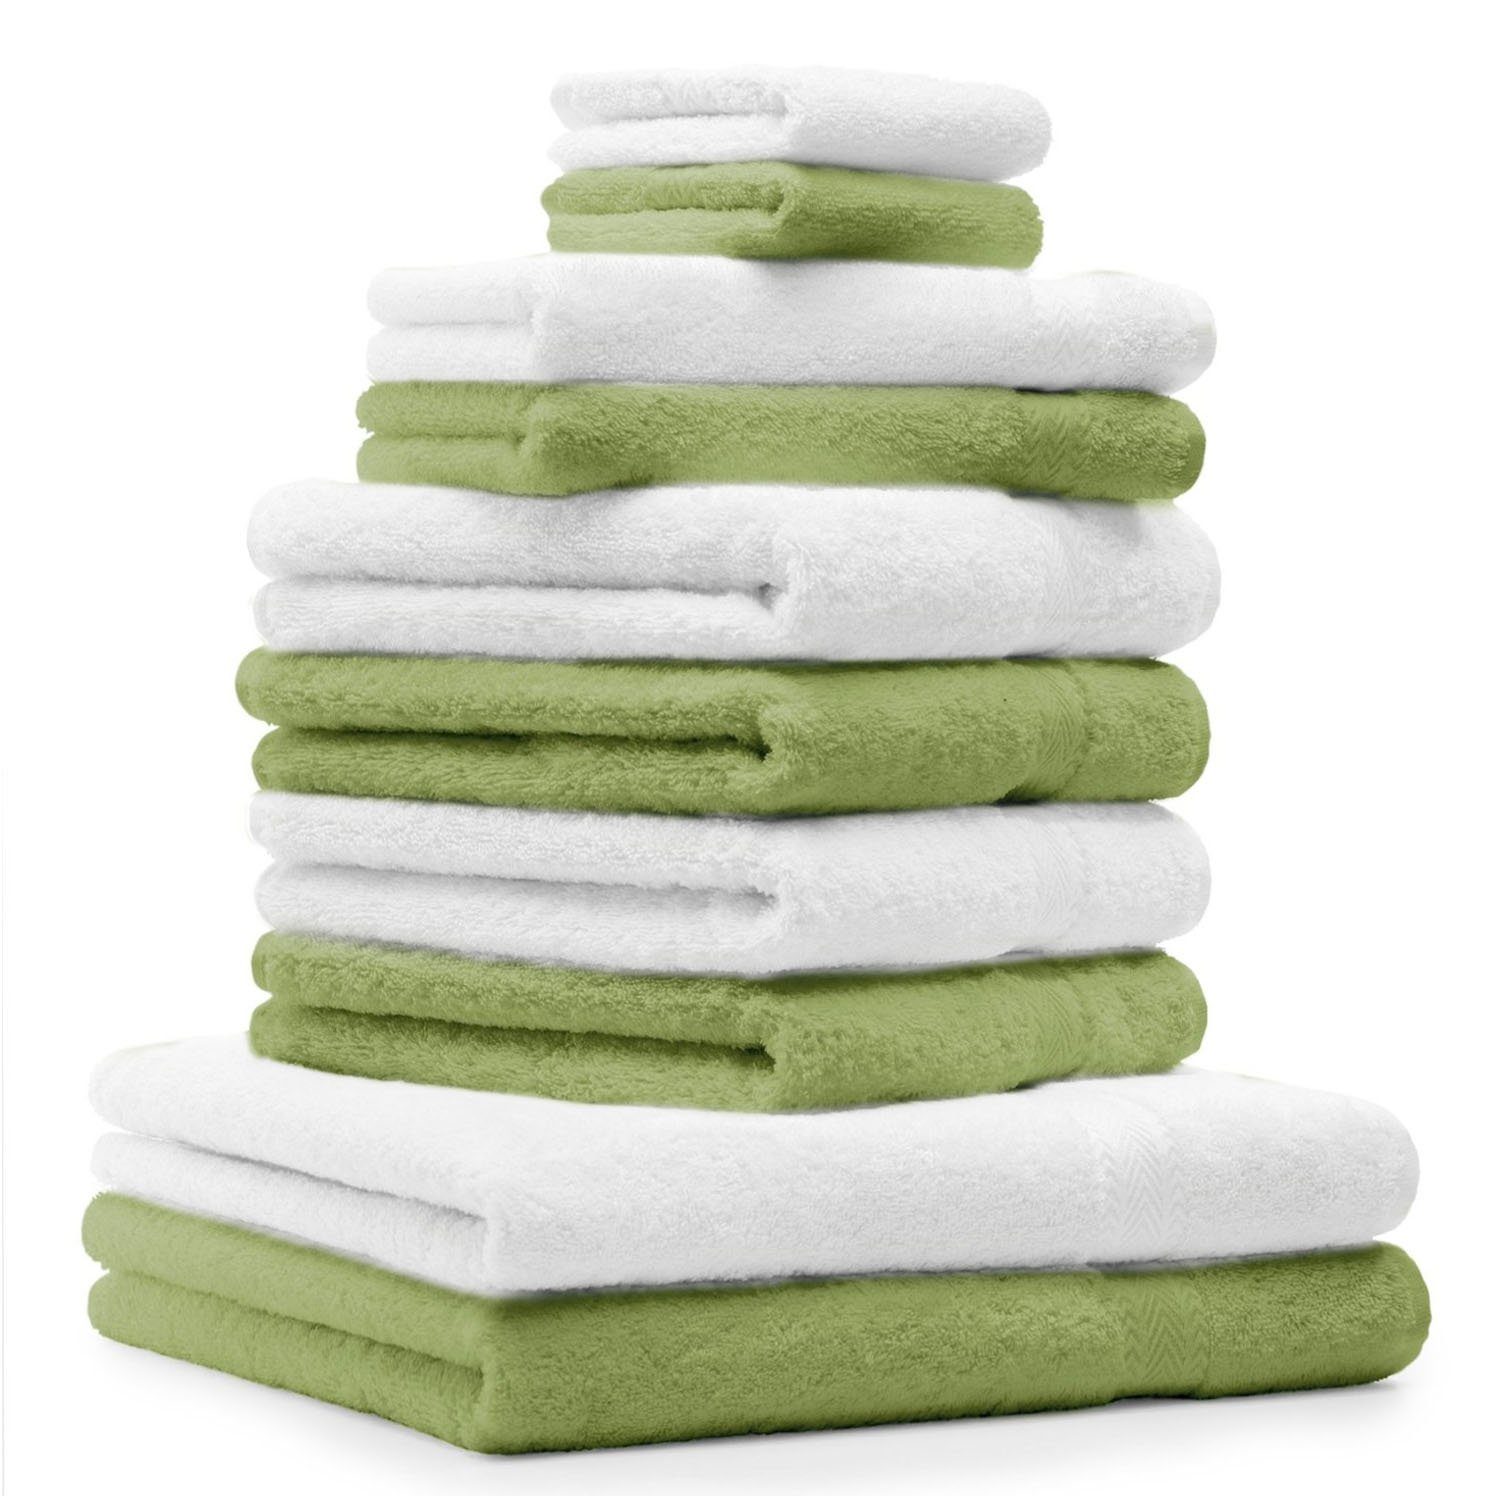 Betz Handtuch Set 10-TLG. Handtuch-Set Classic Farbe apfelgrün und weiß, 100% Baumwolle